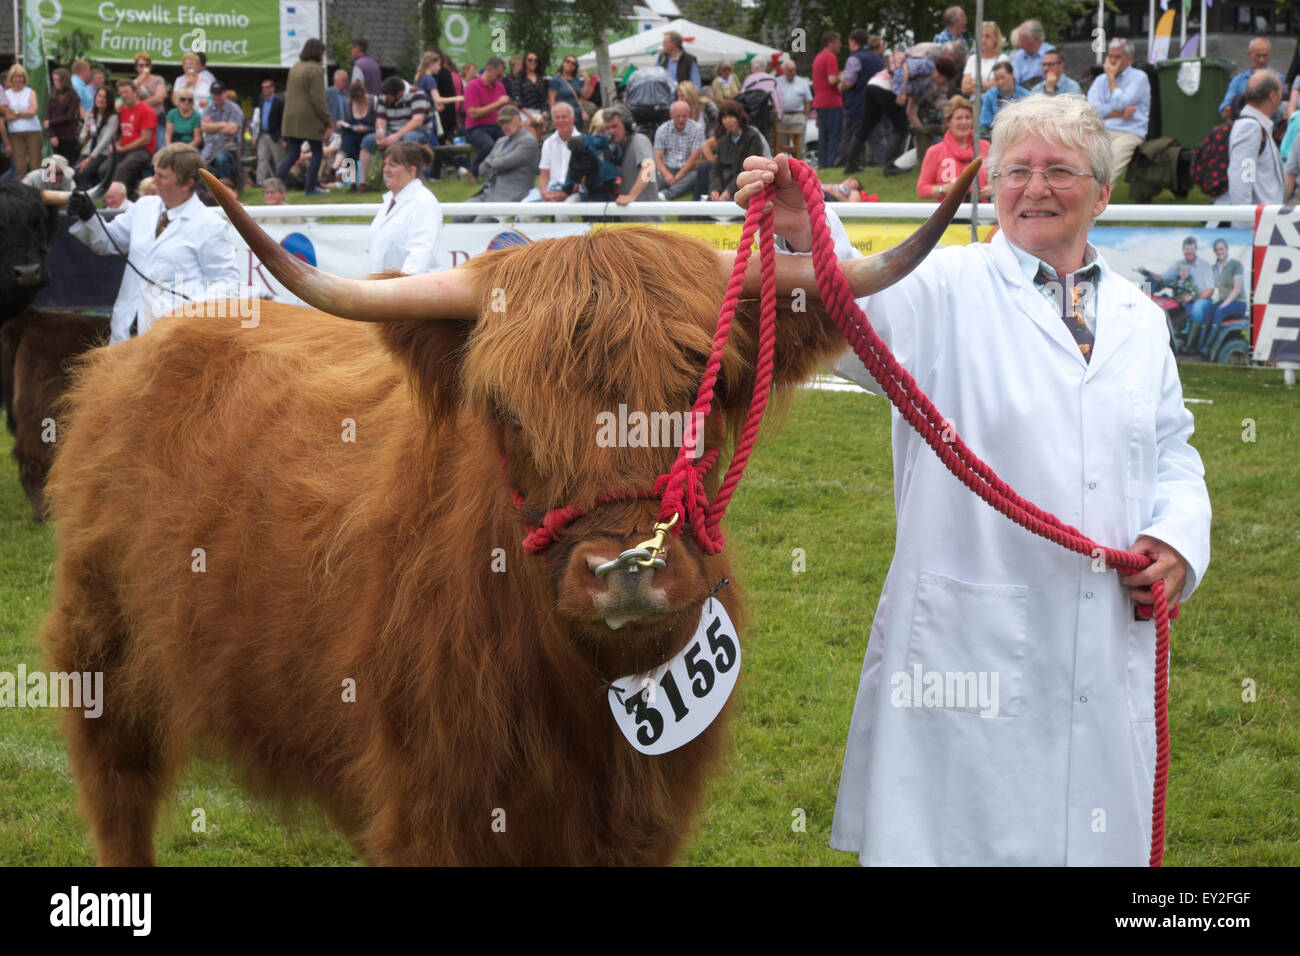 Royal Welsh Show, Powys, Wales UK Luglio 2015 - Jacky Harrison con Champion Highland bovini giovenca chiamato Princess Analena. L'evento attrae oltre 7.500 voci di bestiame. Foto Stock